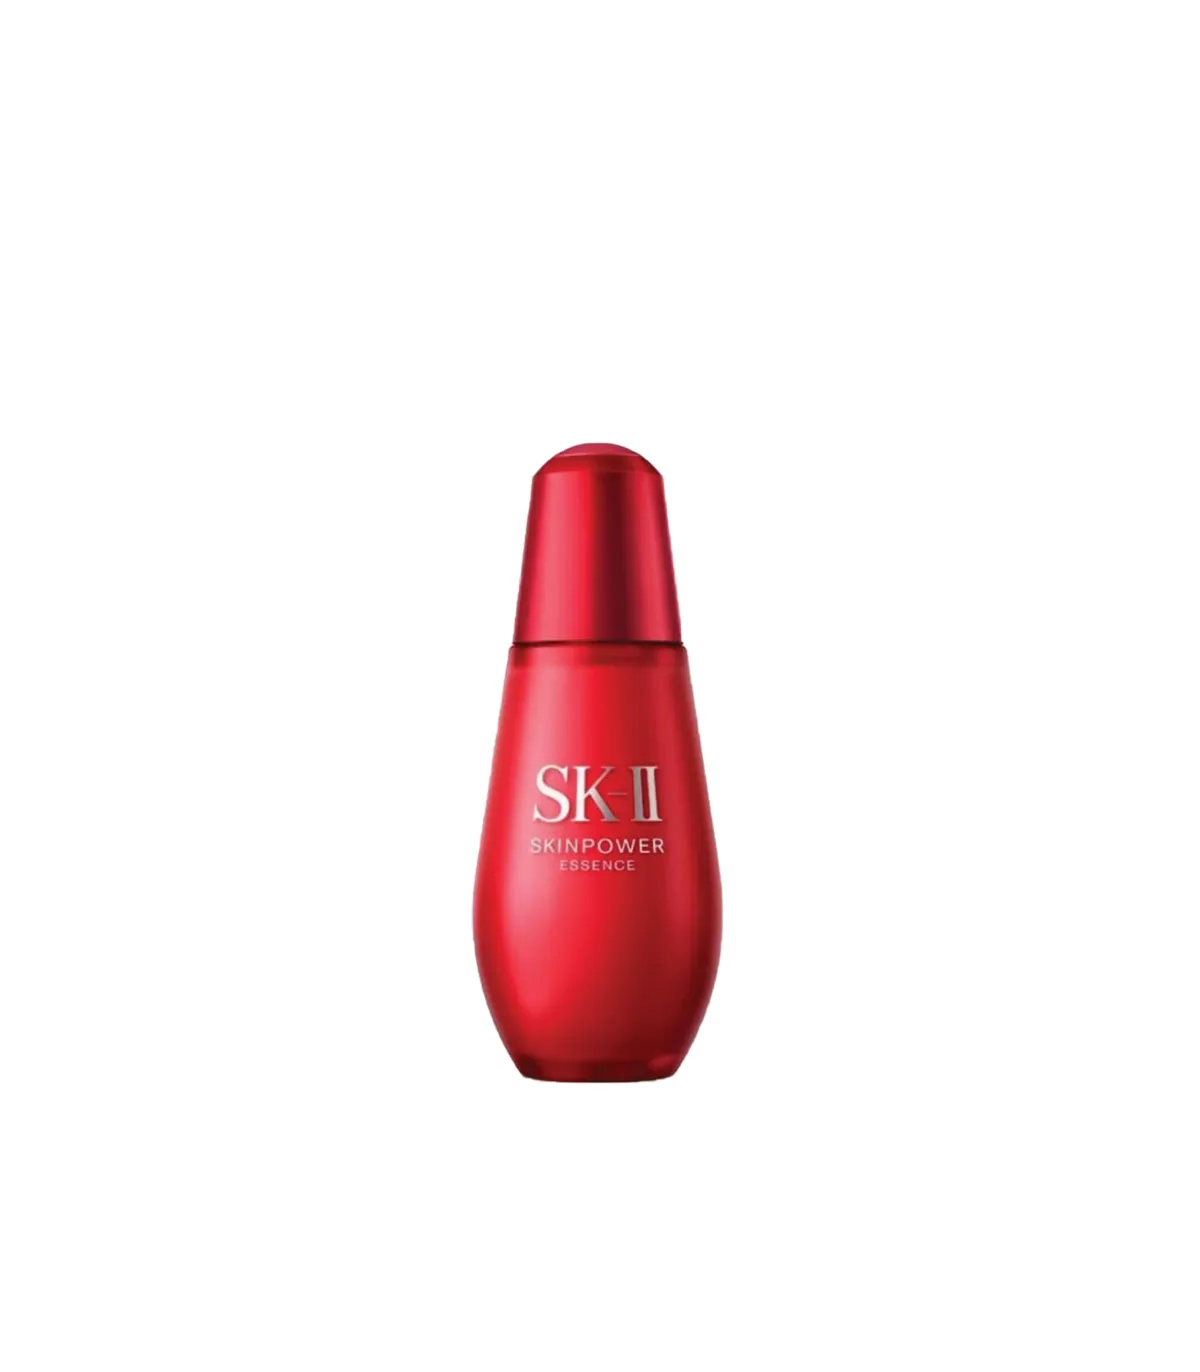 SK-II Skinpower Essence (75ml) - BTEGA